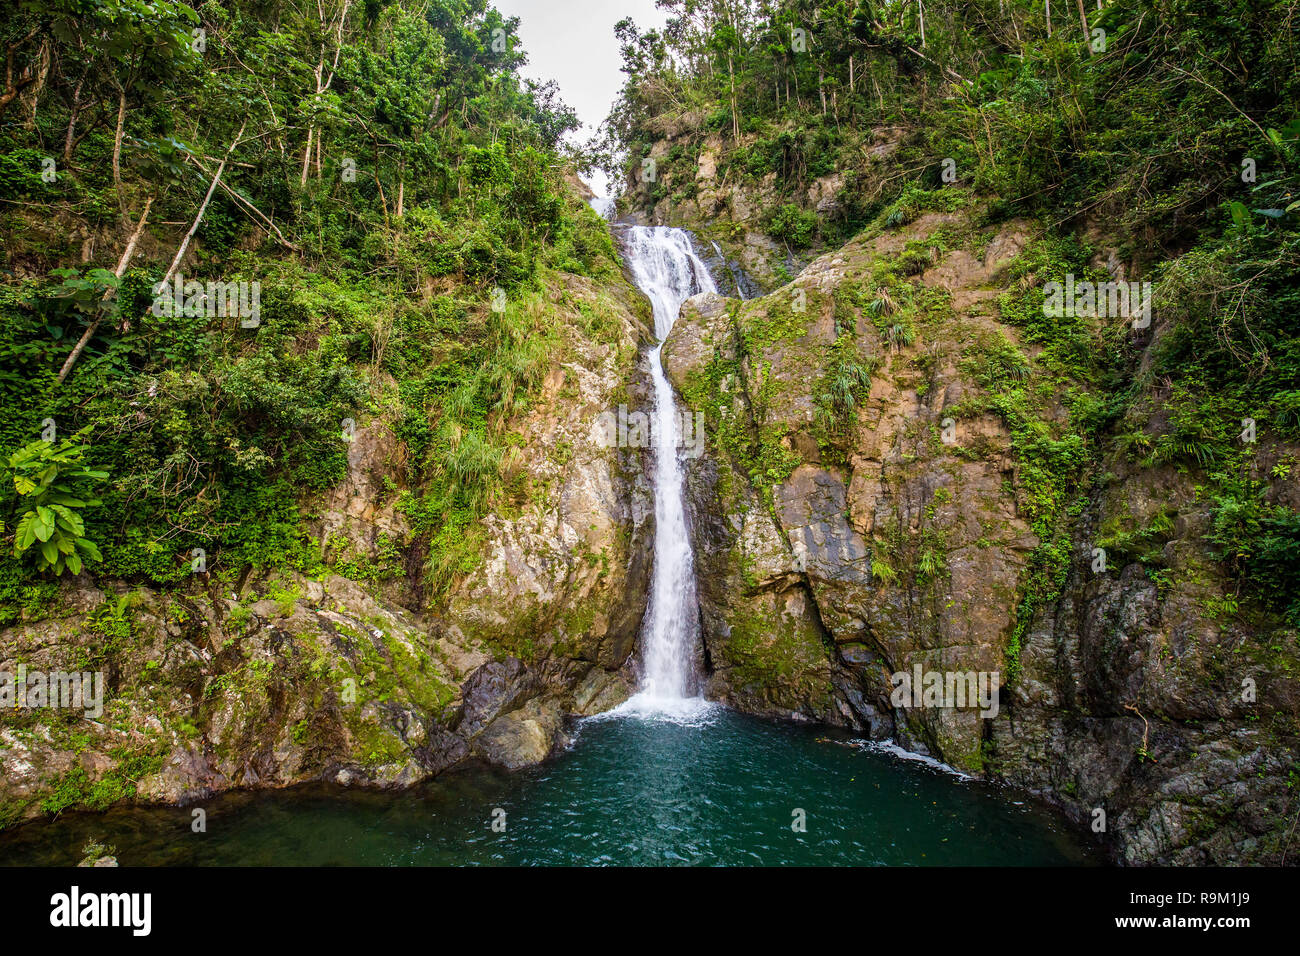 Chorro de Dona Juana waterfall in Puerto Rico attraction Stock Photo